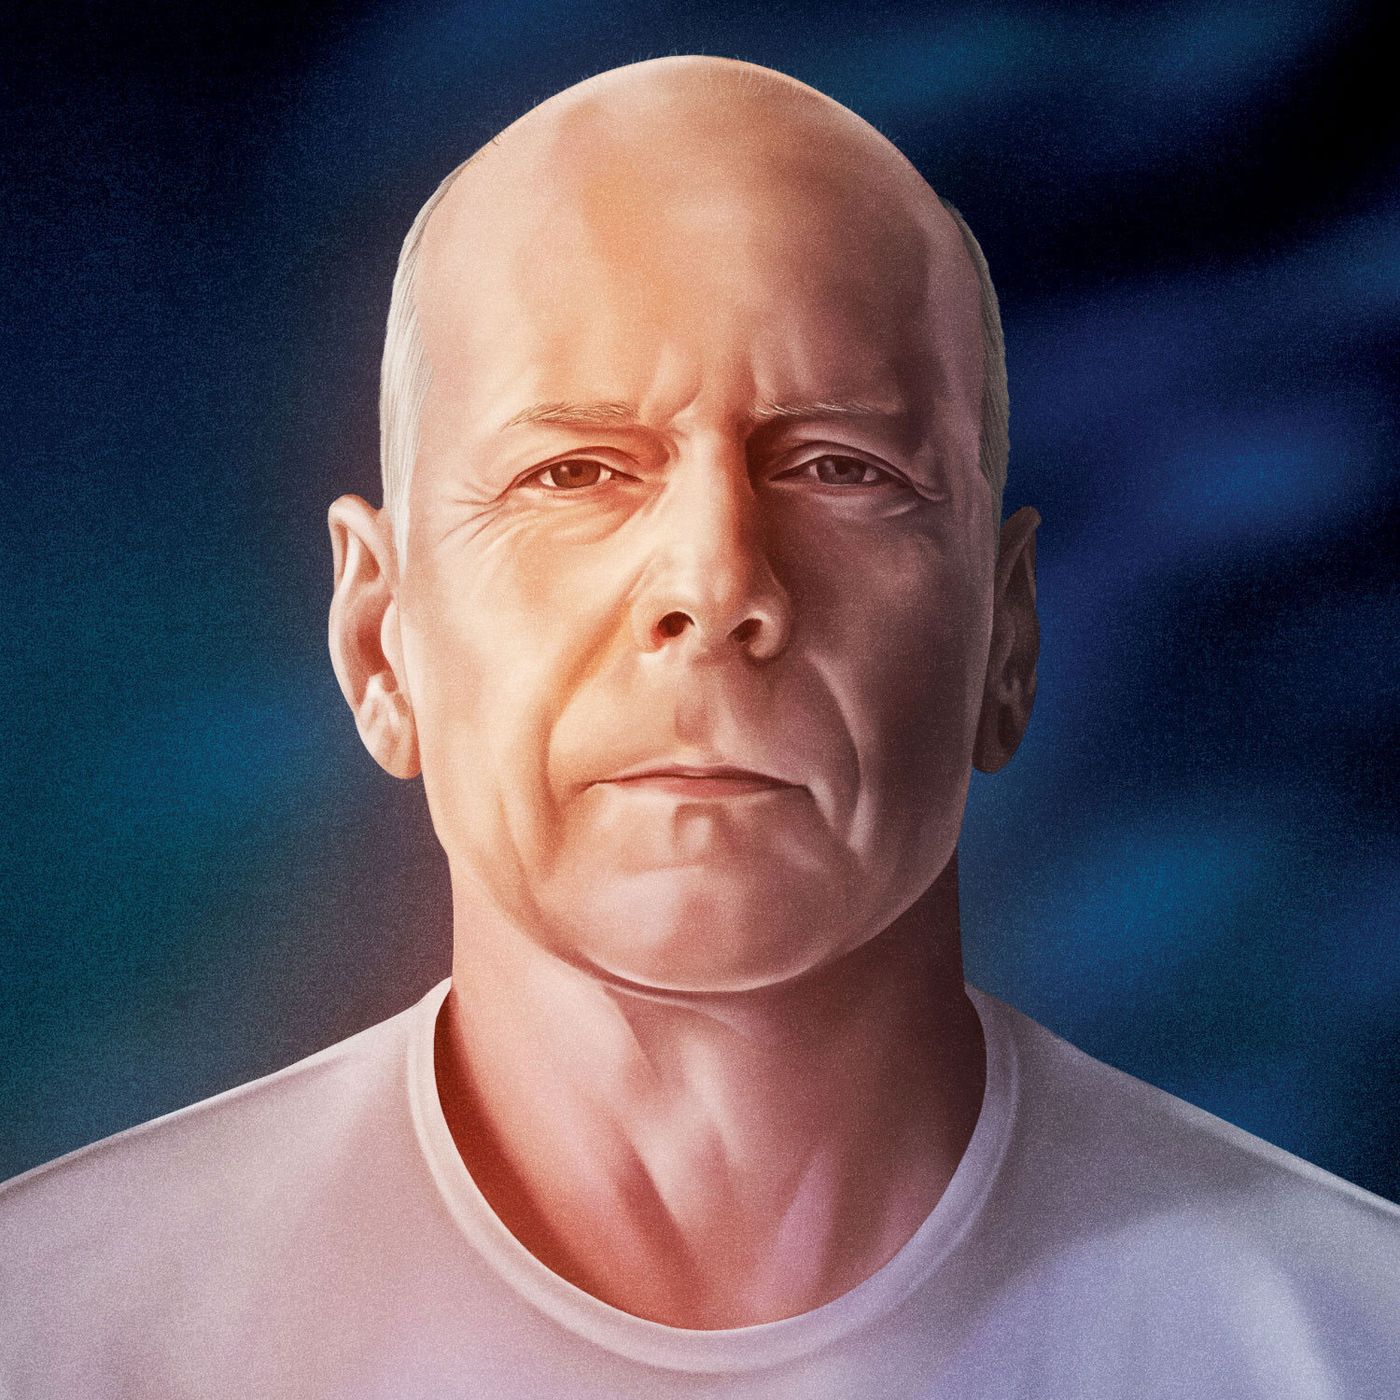 Bruce Willis being still alive